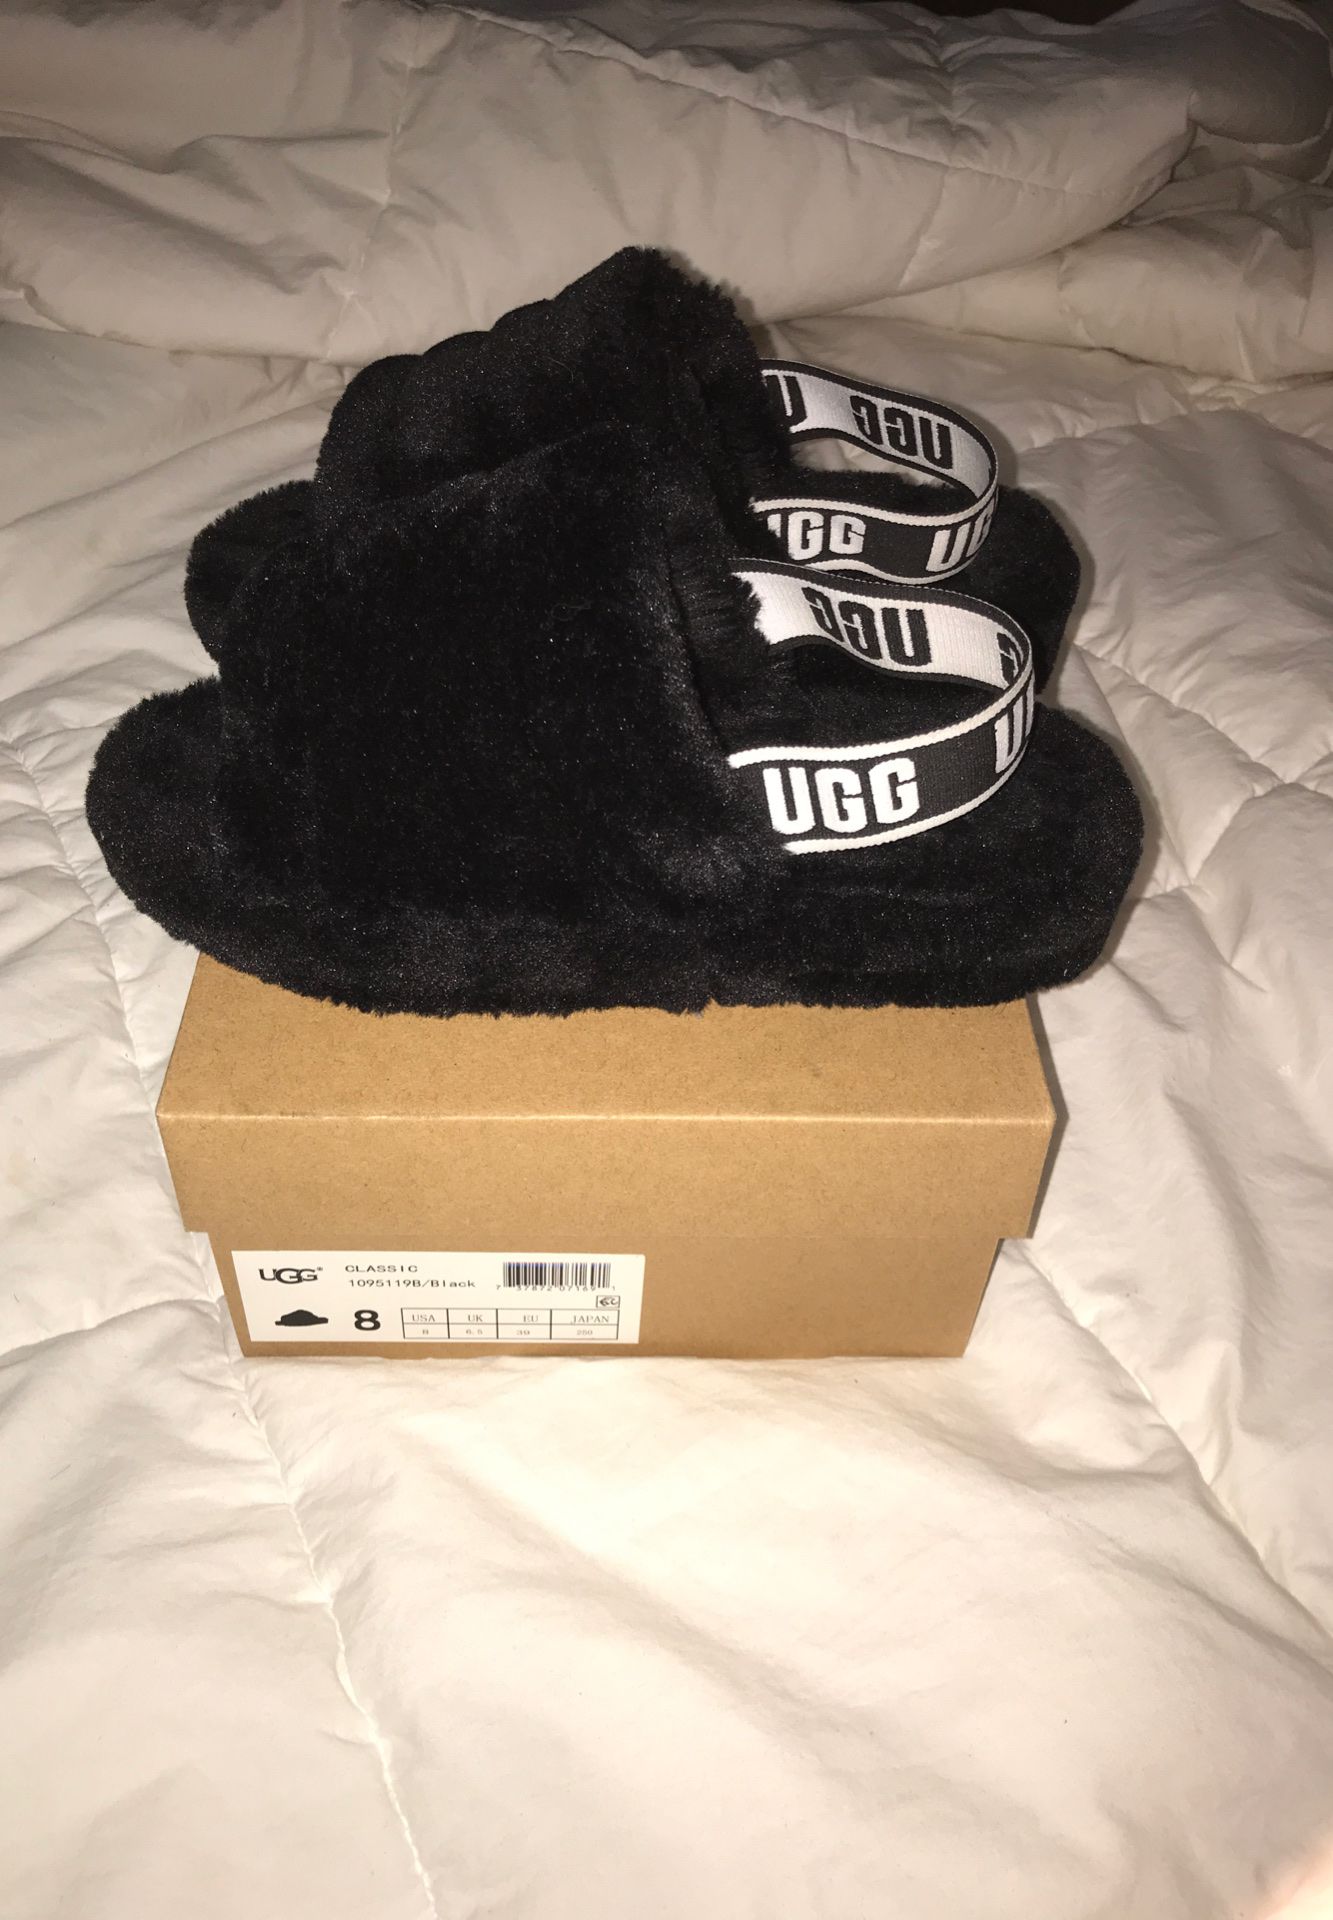 UGG Sandals/Black Size 8